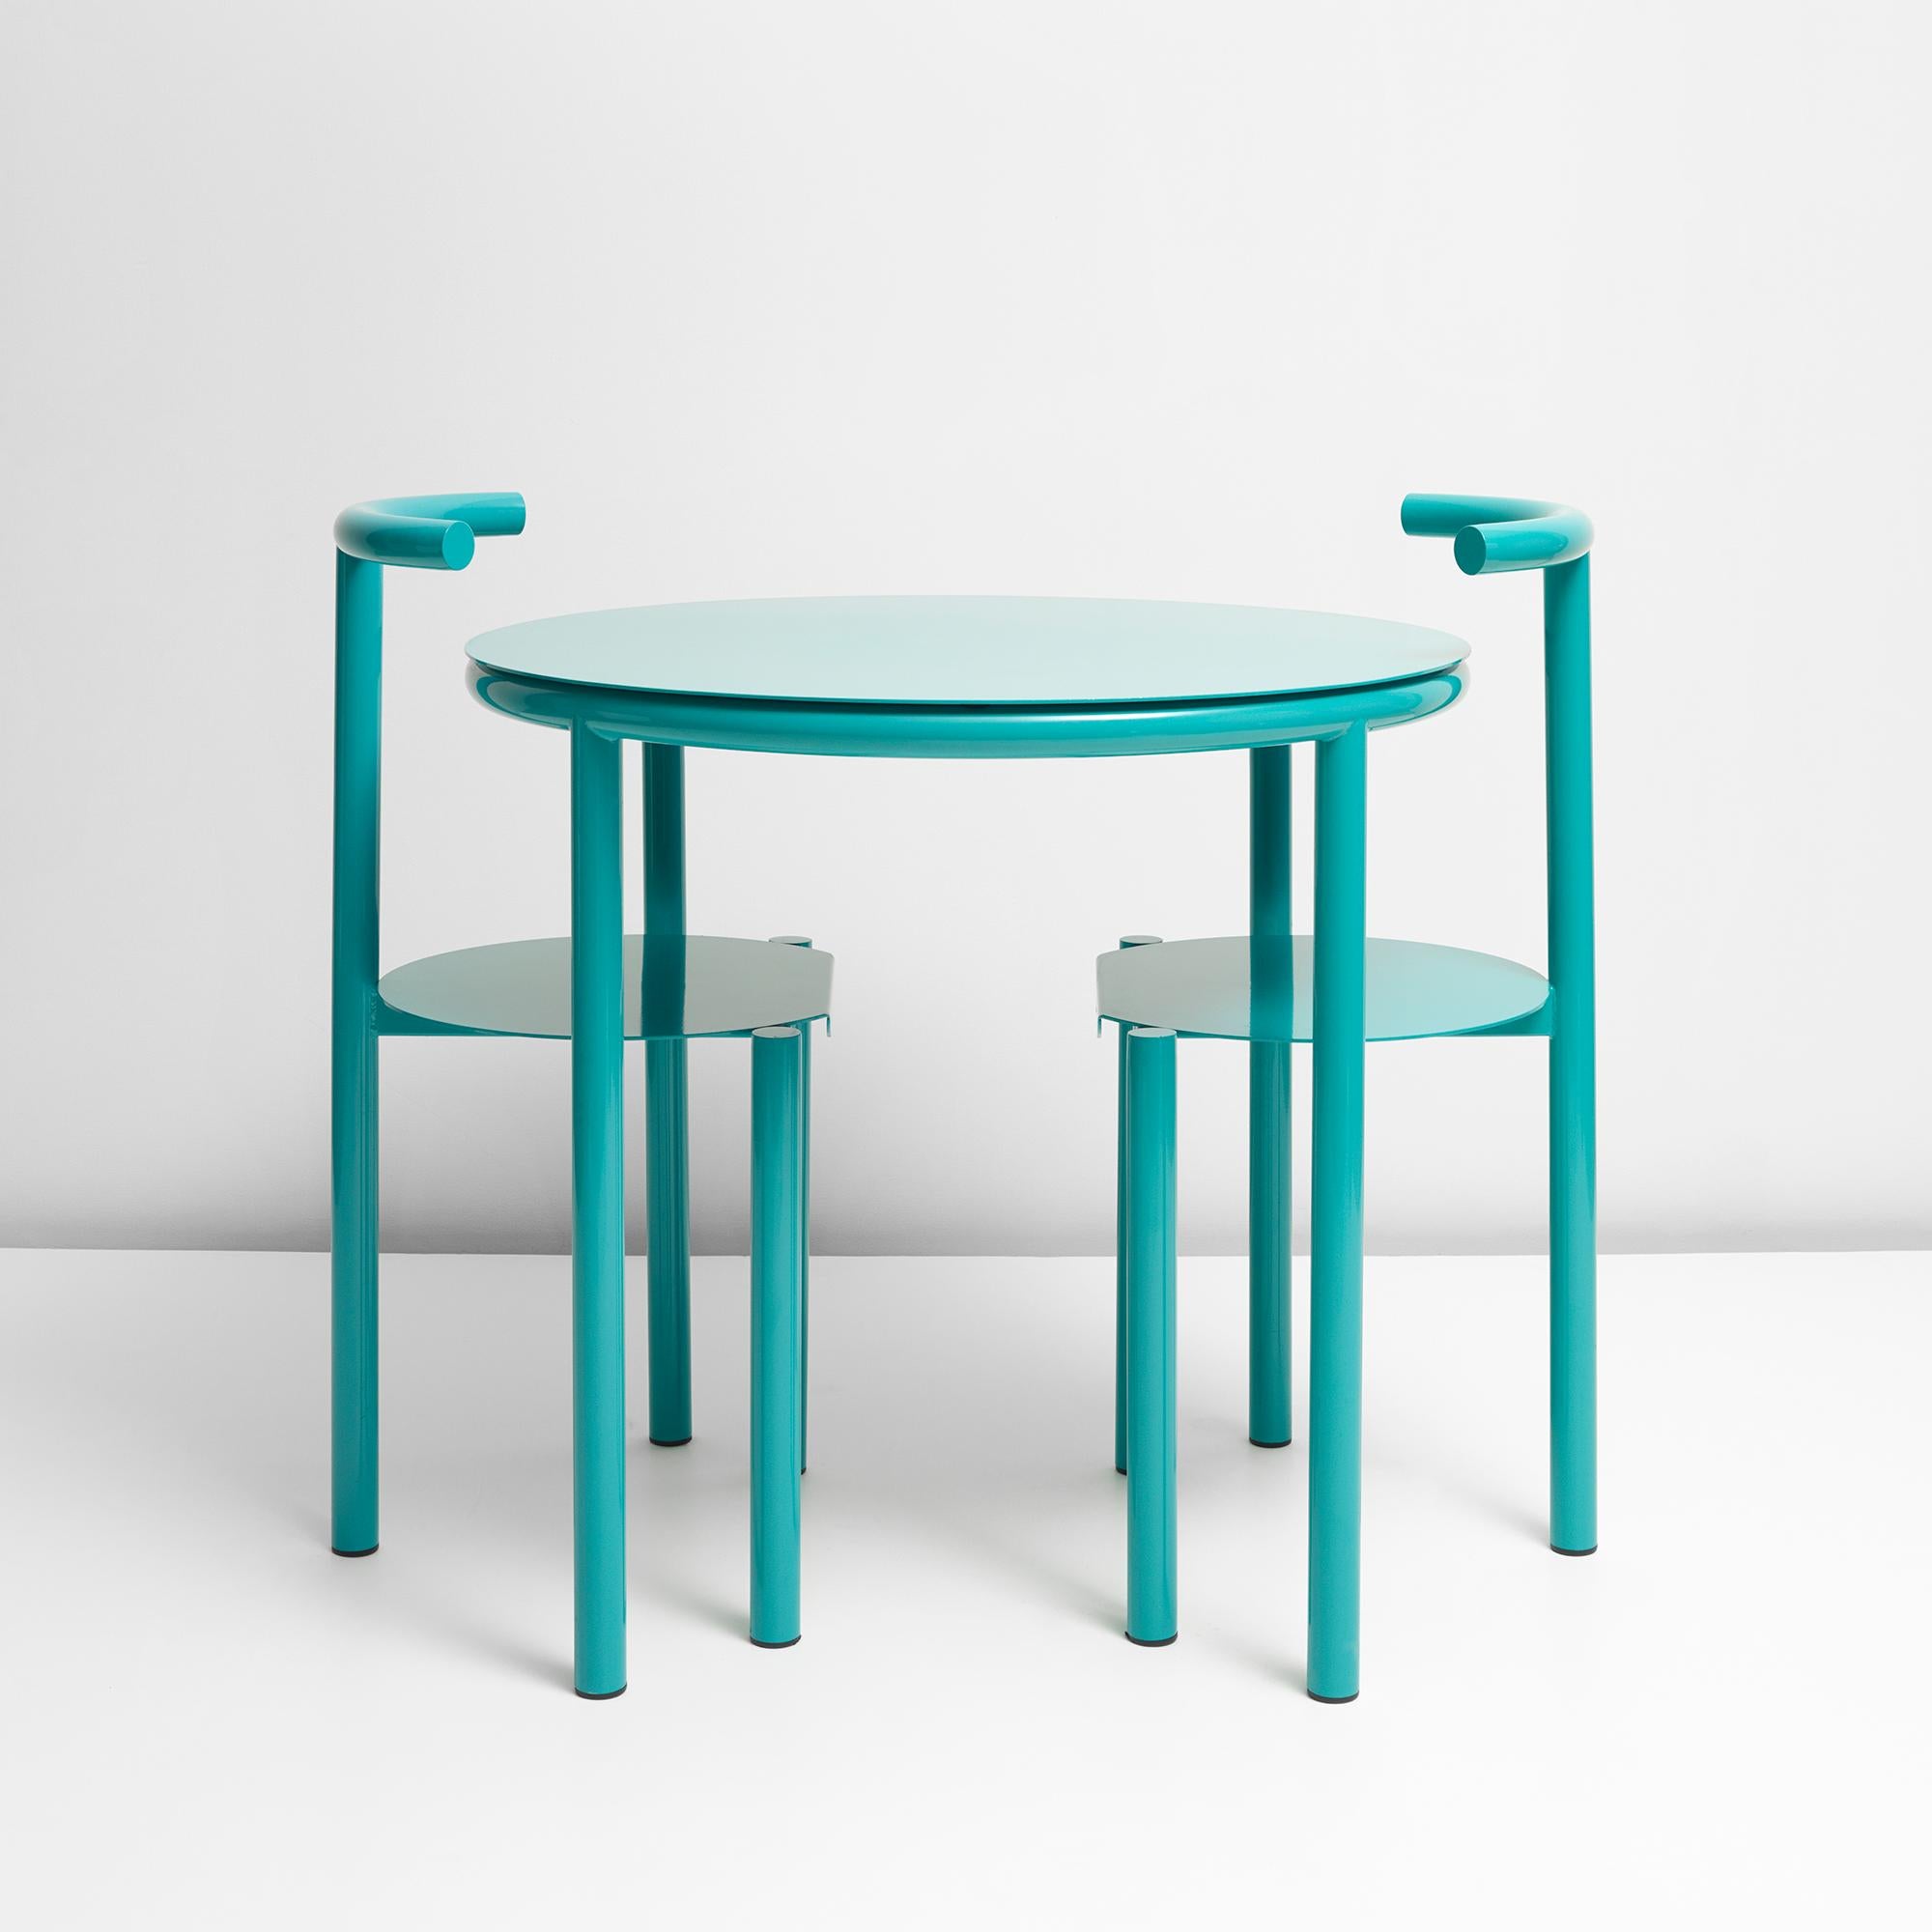 Ein Café-Tisch, der ursprünglich für die Kombination mit dem Stuhl der Serie B entwickelt wurde.

Die B-Serie greift die grafischen Formen der städtischen Umwelt auf und macht sie zu einem kühnen Statement. Das minimalistische Design mit